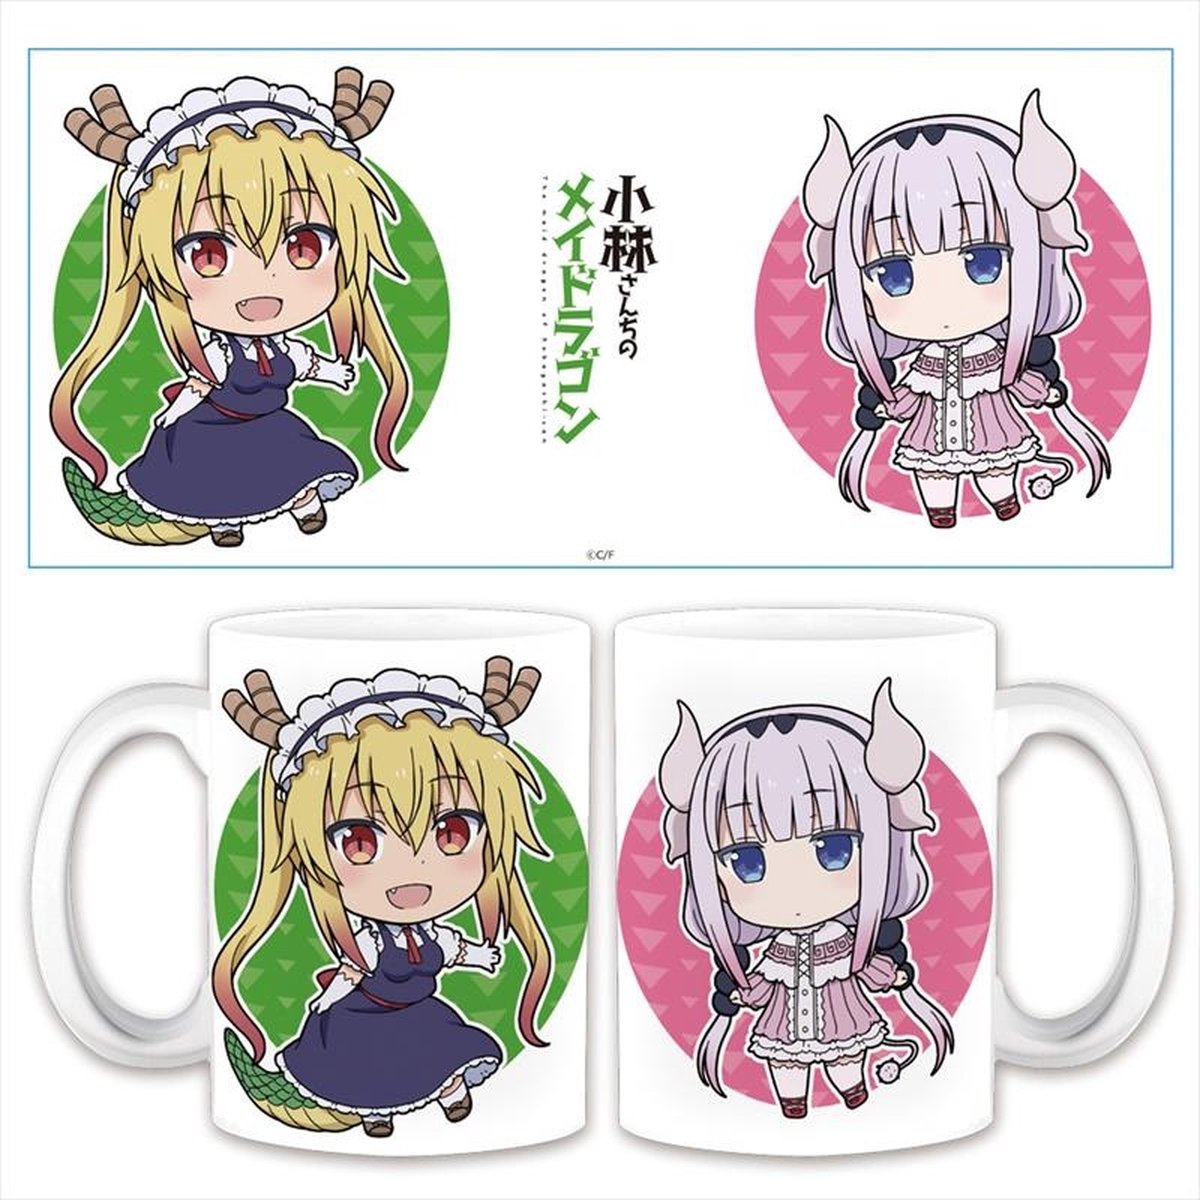 Miss Kobayashi's Dragon Maid: Mug